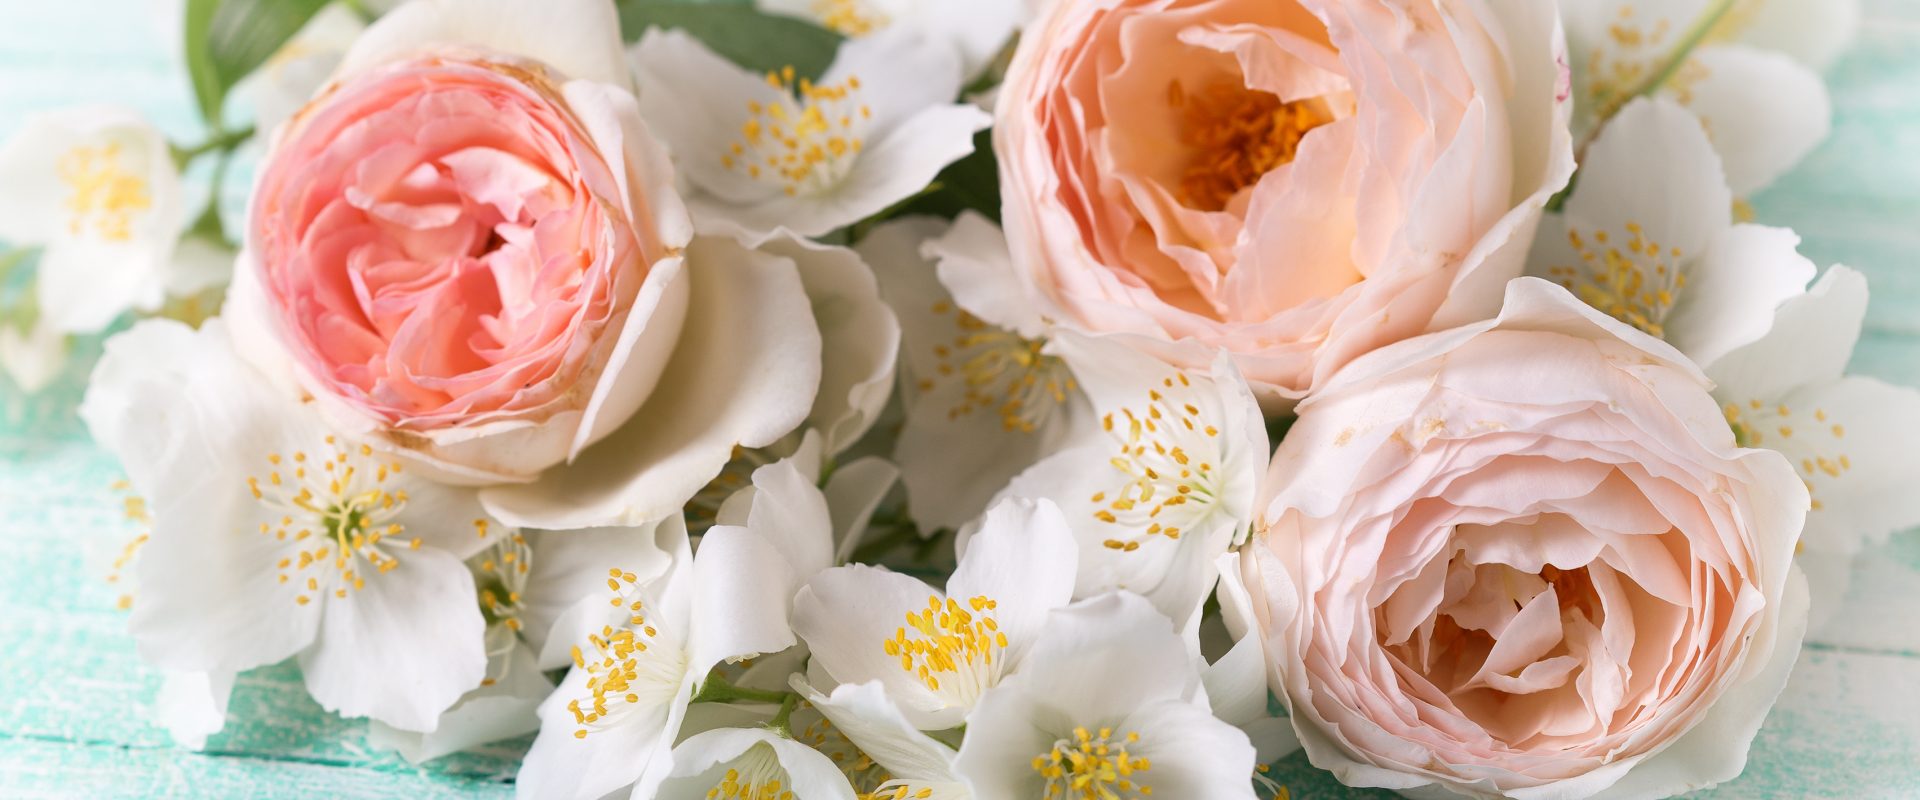 Jaśmin, róża i forsycja, czyli 3 kwiatki dla zdrowia i urody. Bukiet kwiatów jaśminu i róży.